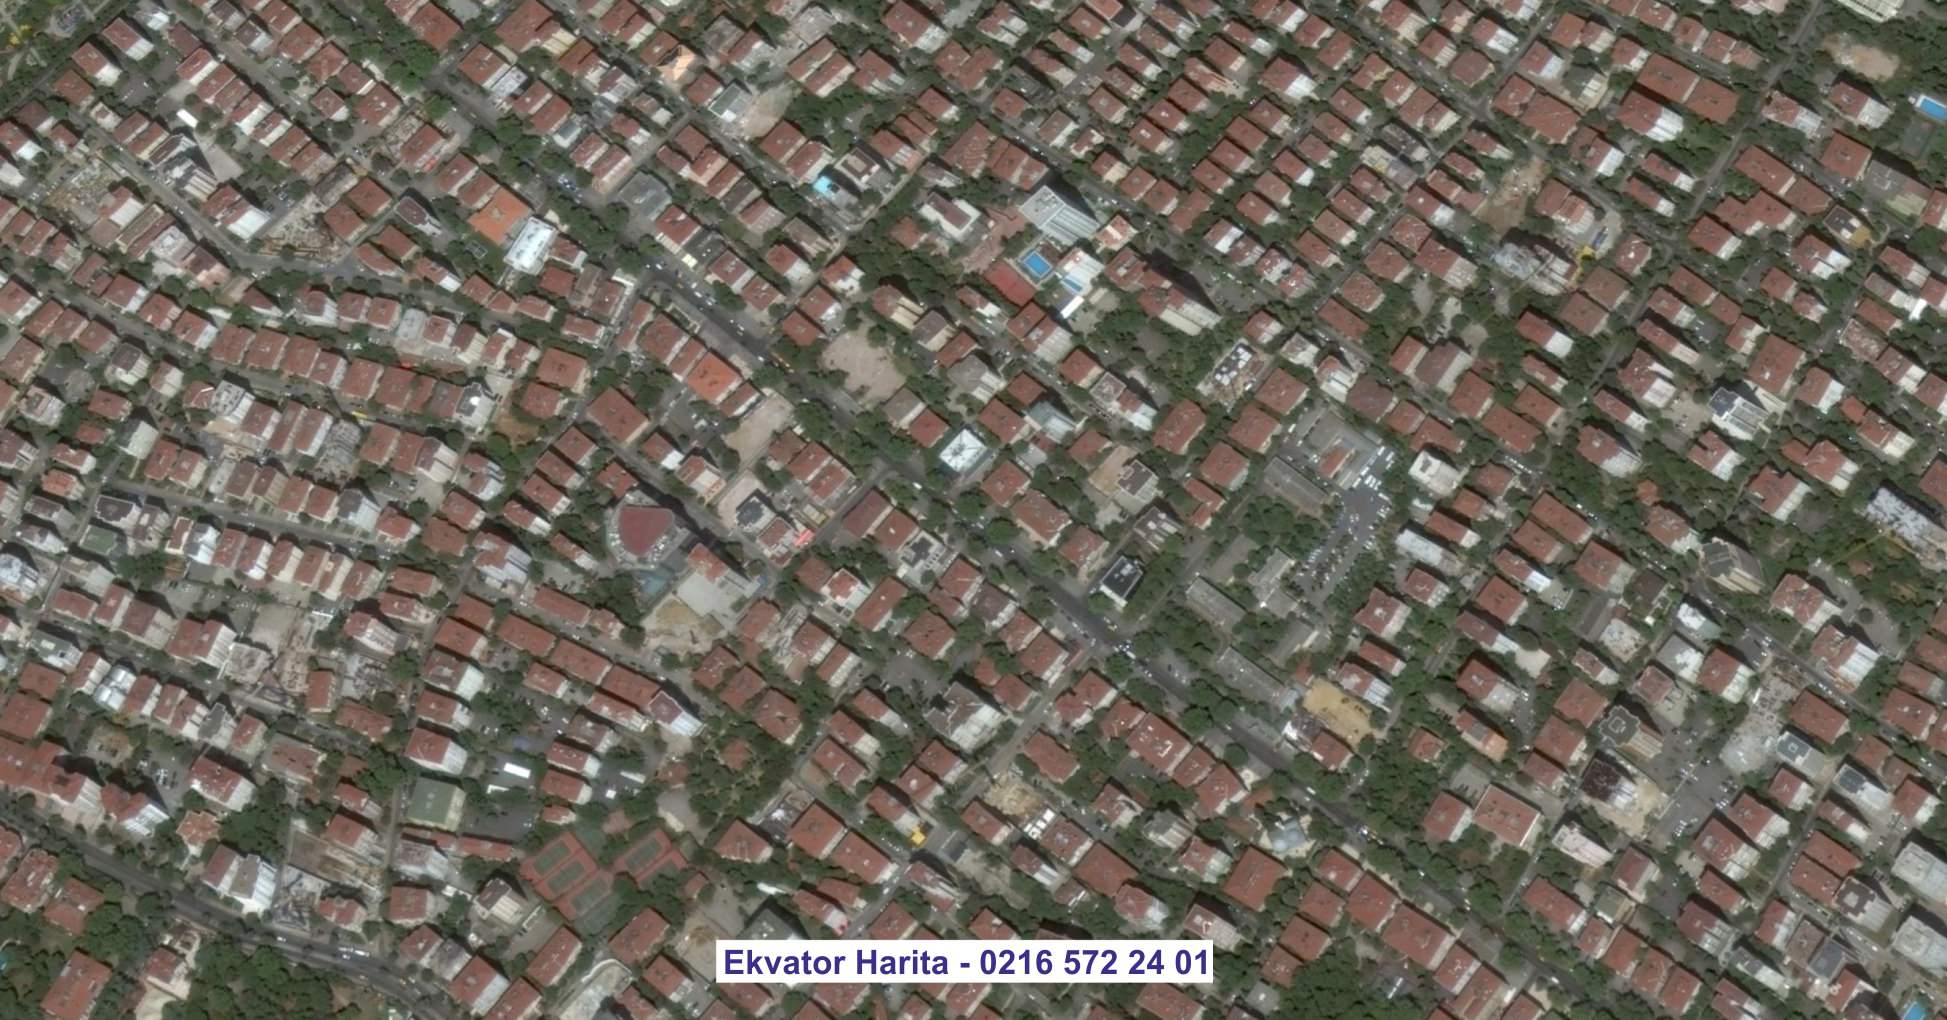 Şişli Uydu Görüntüsü Örnek Fotoğrafı